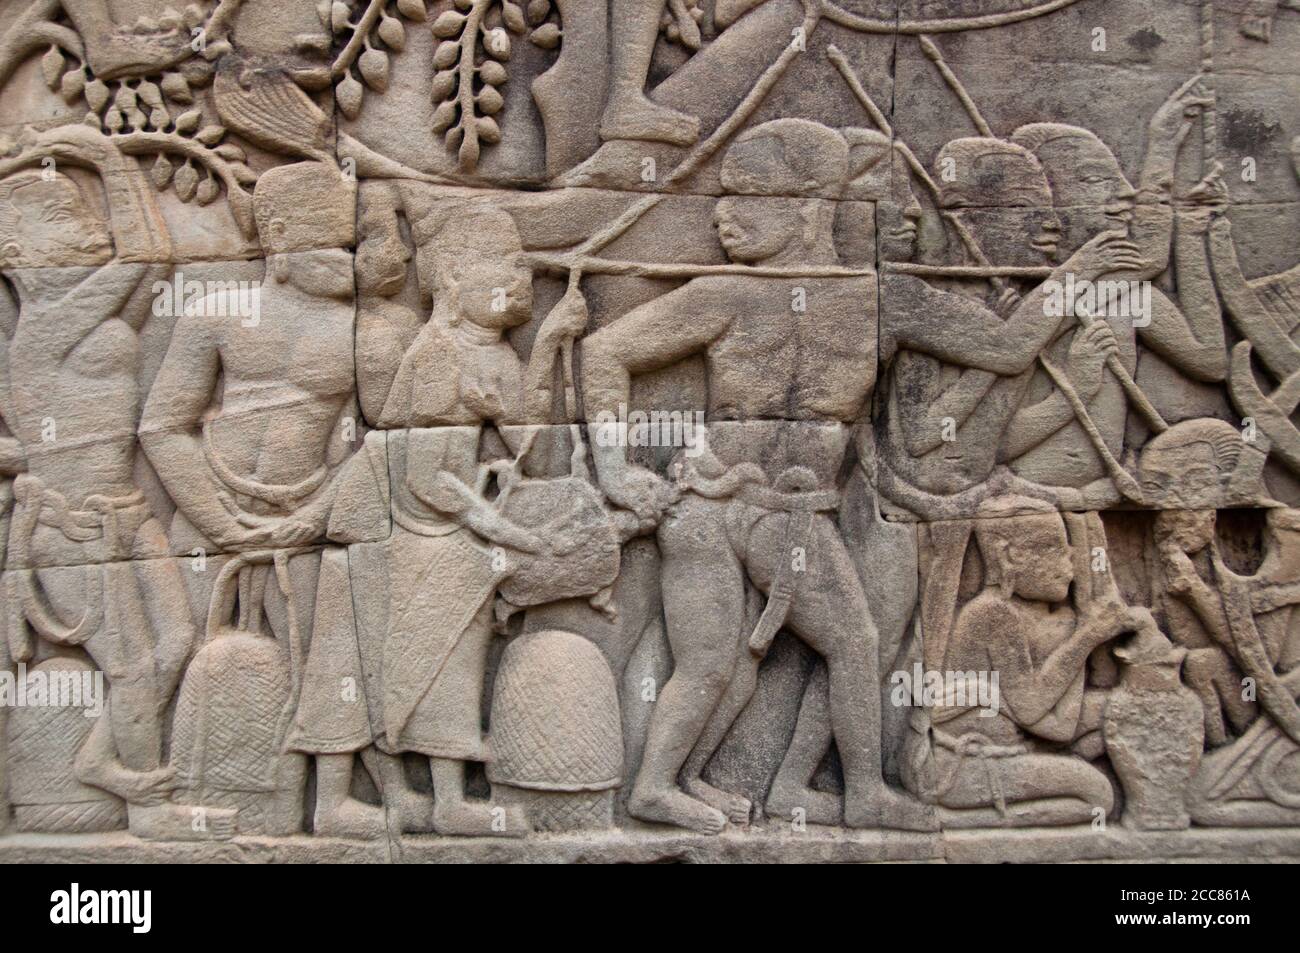 Kambodscha: Eine Frau stößt eine Schildkröte in den Boden eines Soldaten, was ihm einen Schock gibt, als die Khmer-Armee vorrückt, Bas-Relief Eastern Wall, Southern Section, the Bayon, Angkor Thom. Der Bayon war ursprünglich der offizielle Staatstempel des Mahayana Buddhistischen Königs Jayavarman VII. Das Bayon, im Zentrum von Angkor Thom (große Stadt), wurde im 12. Jahrhundert von König Jayavarman VII. Gegründet Angkor Thom, was ‘die große Stadt’ bedeutet, liegt eine Meile nördlich von Angkor Wat. Es wurde im späten 12. Jahrhundert CE von König Jayavarman VII. Gebaut Stockfoto